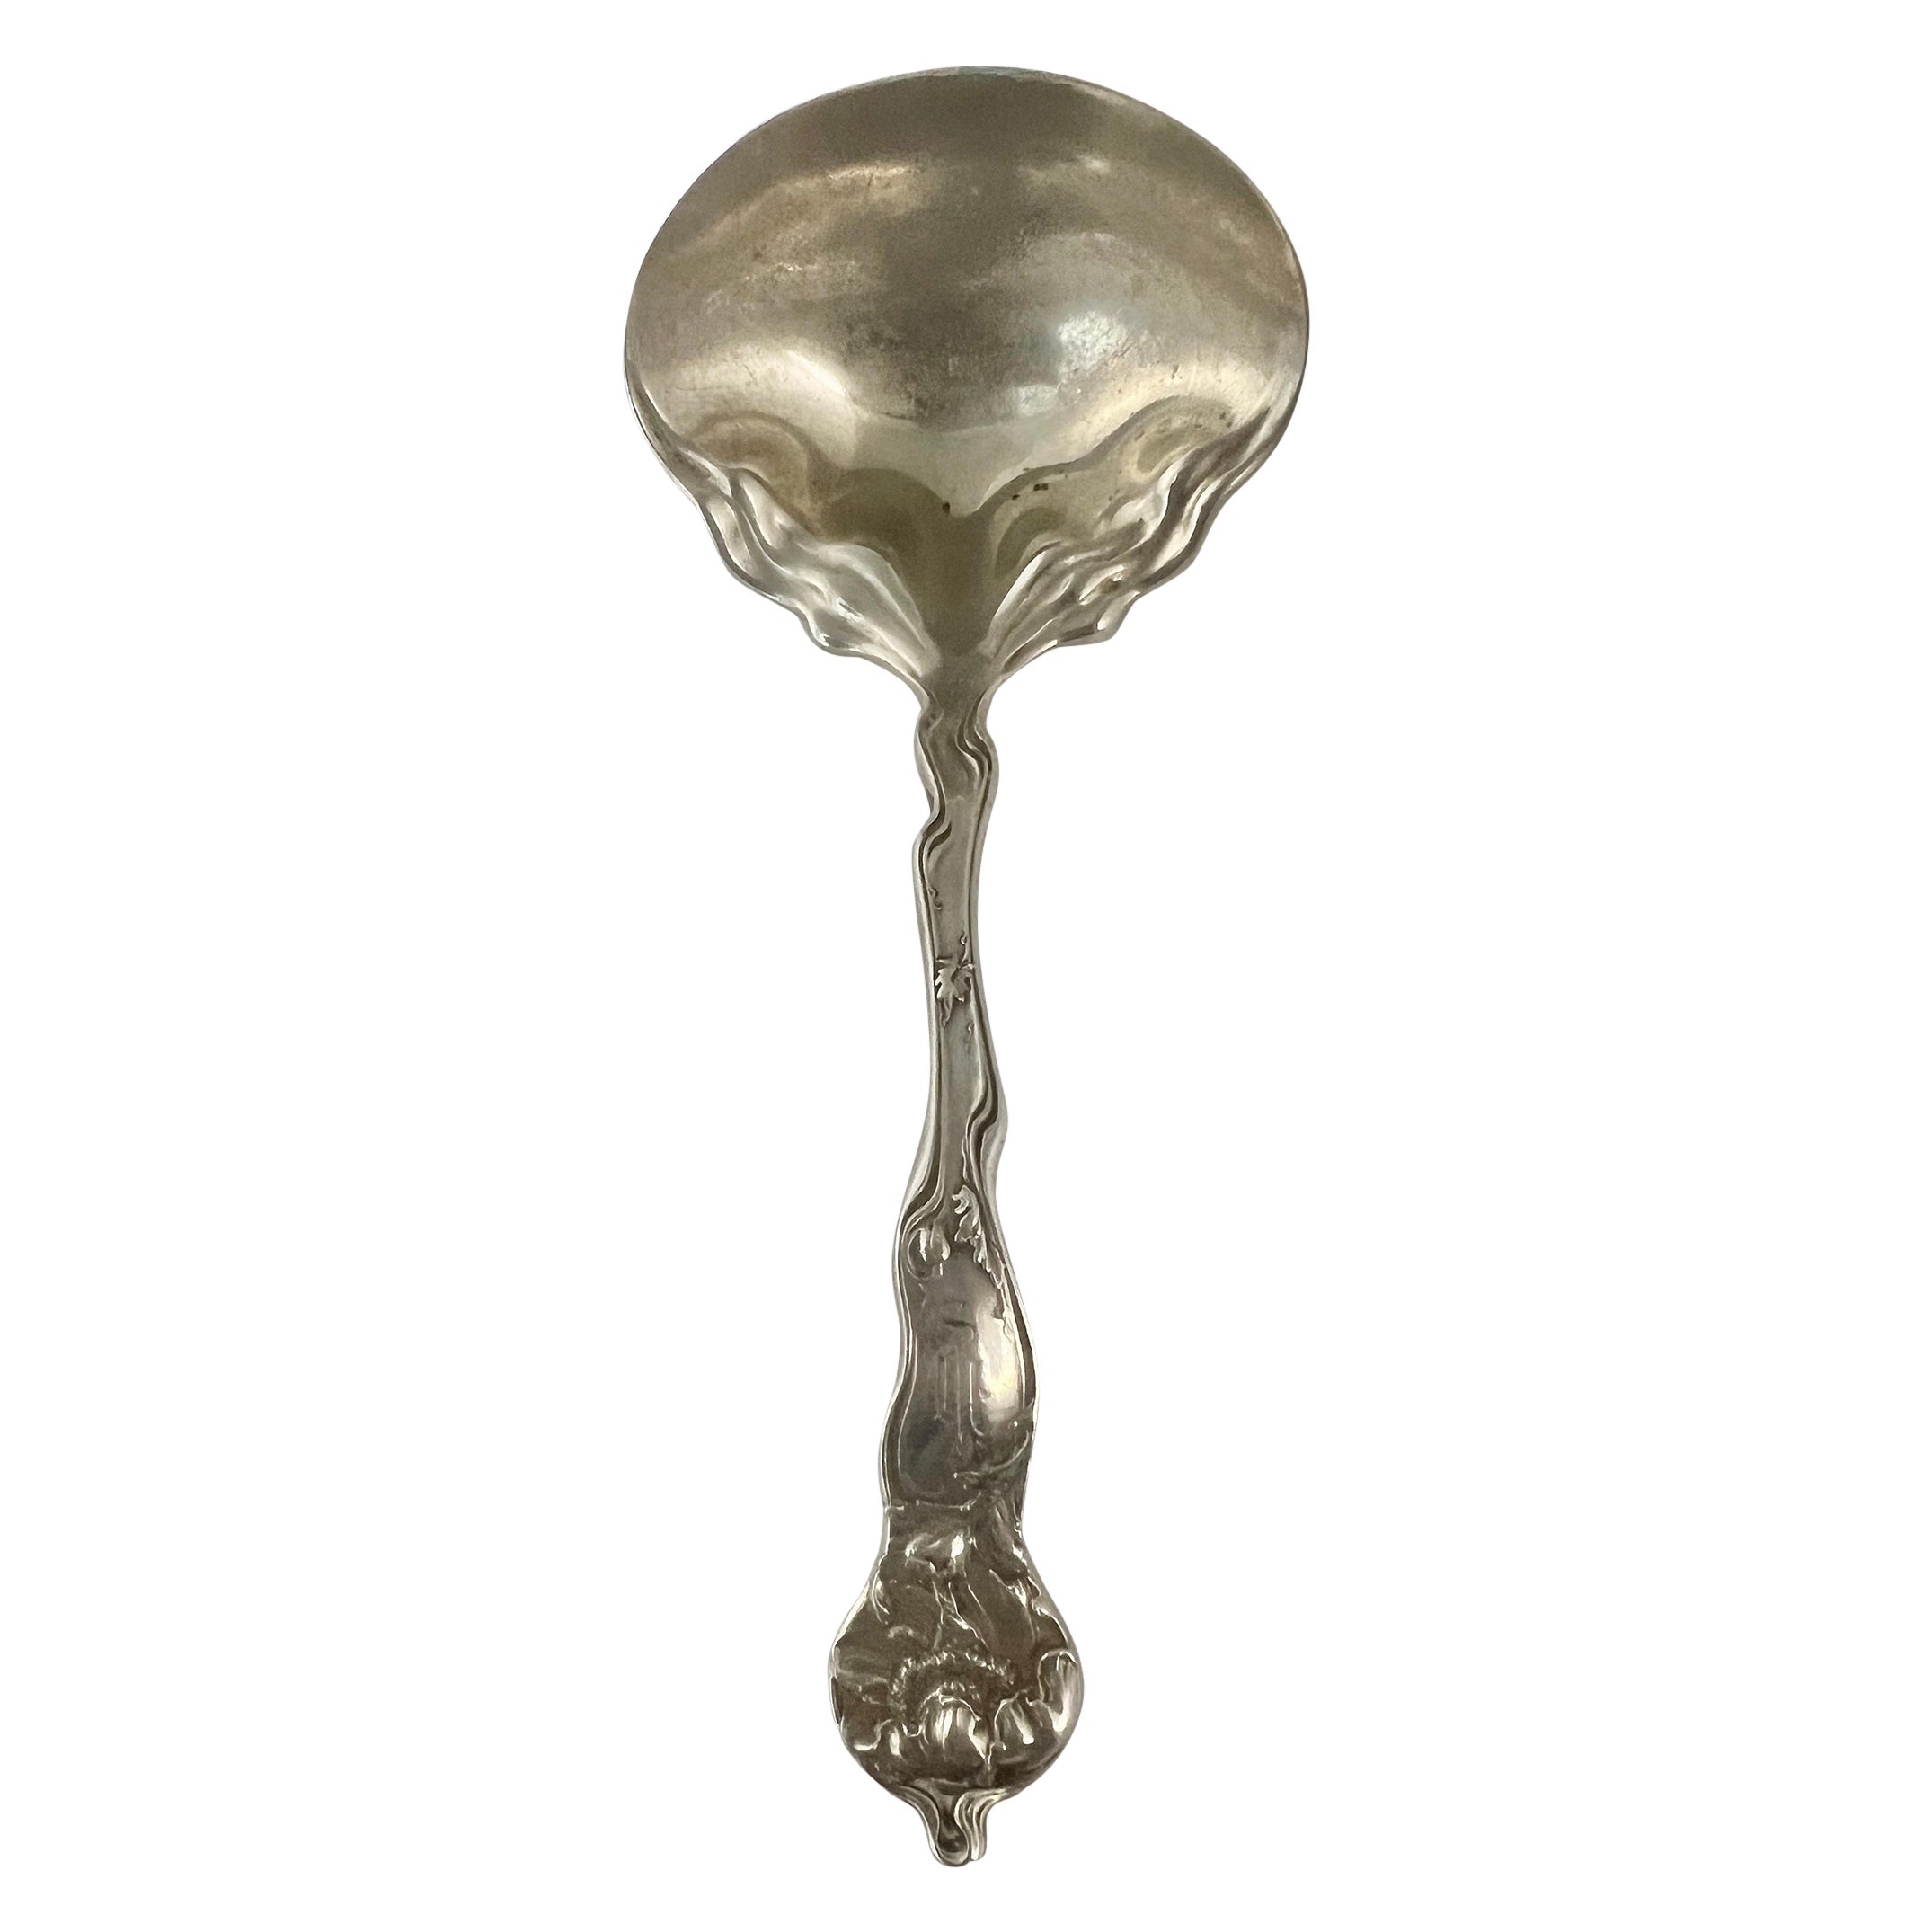 Art Nouveau Serving Spoon, George W. Shiebler & Co.